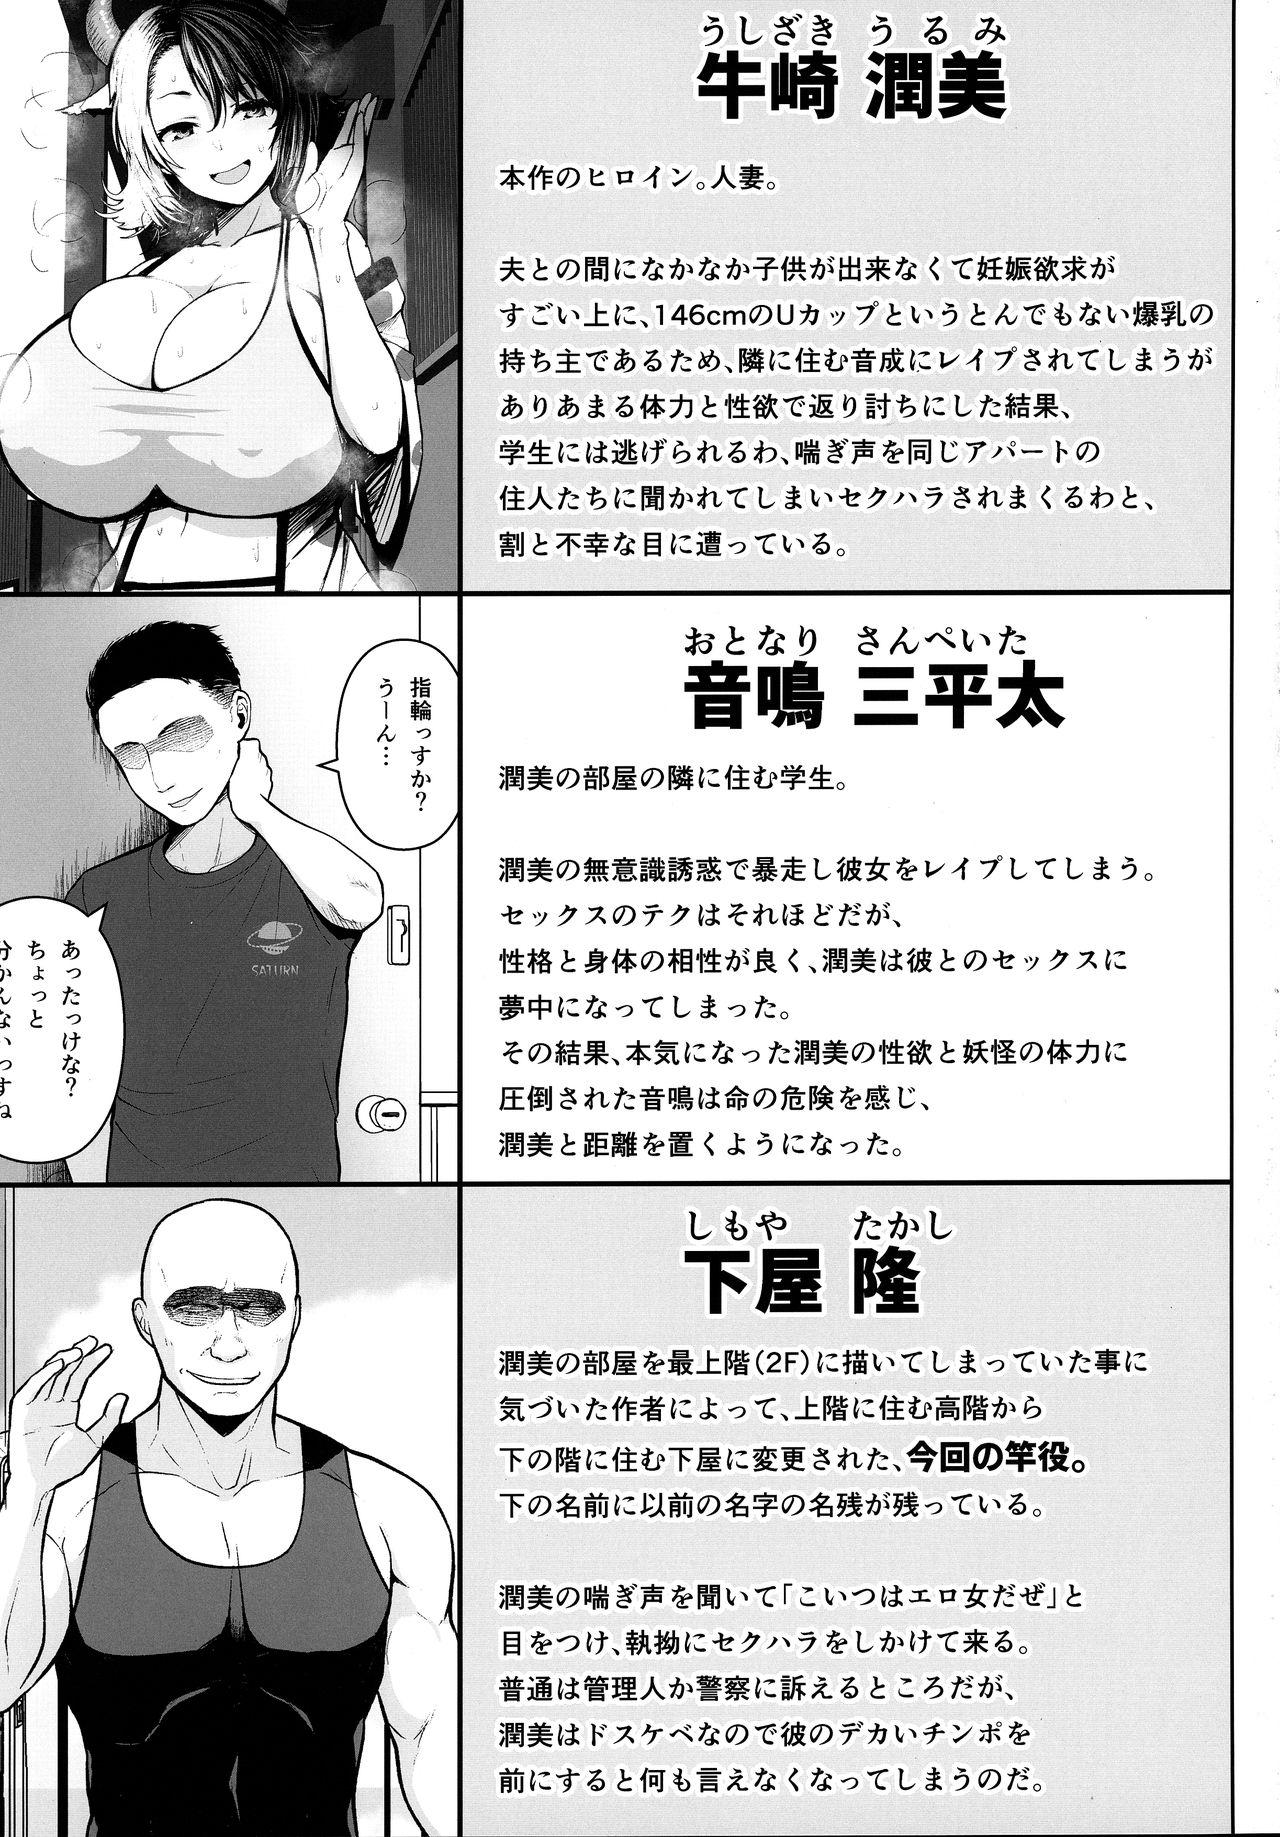 Pornstars Oku-san no Oppai ga Dekasugiru no ga Warui! 3 - Touhou project Trannies - Page 2